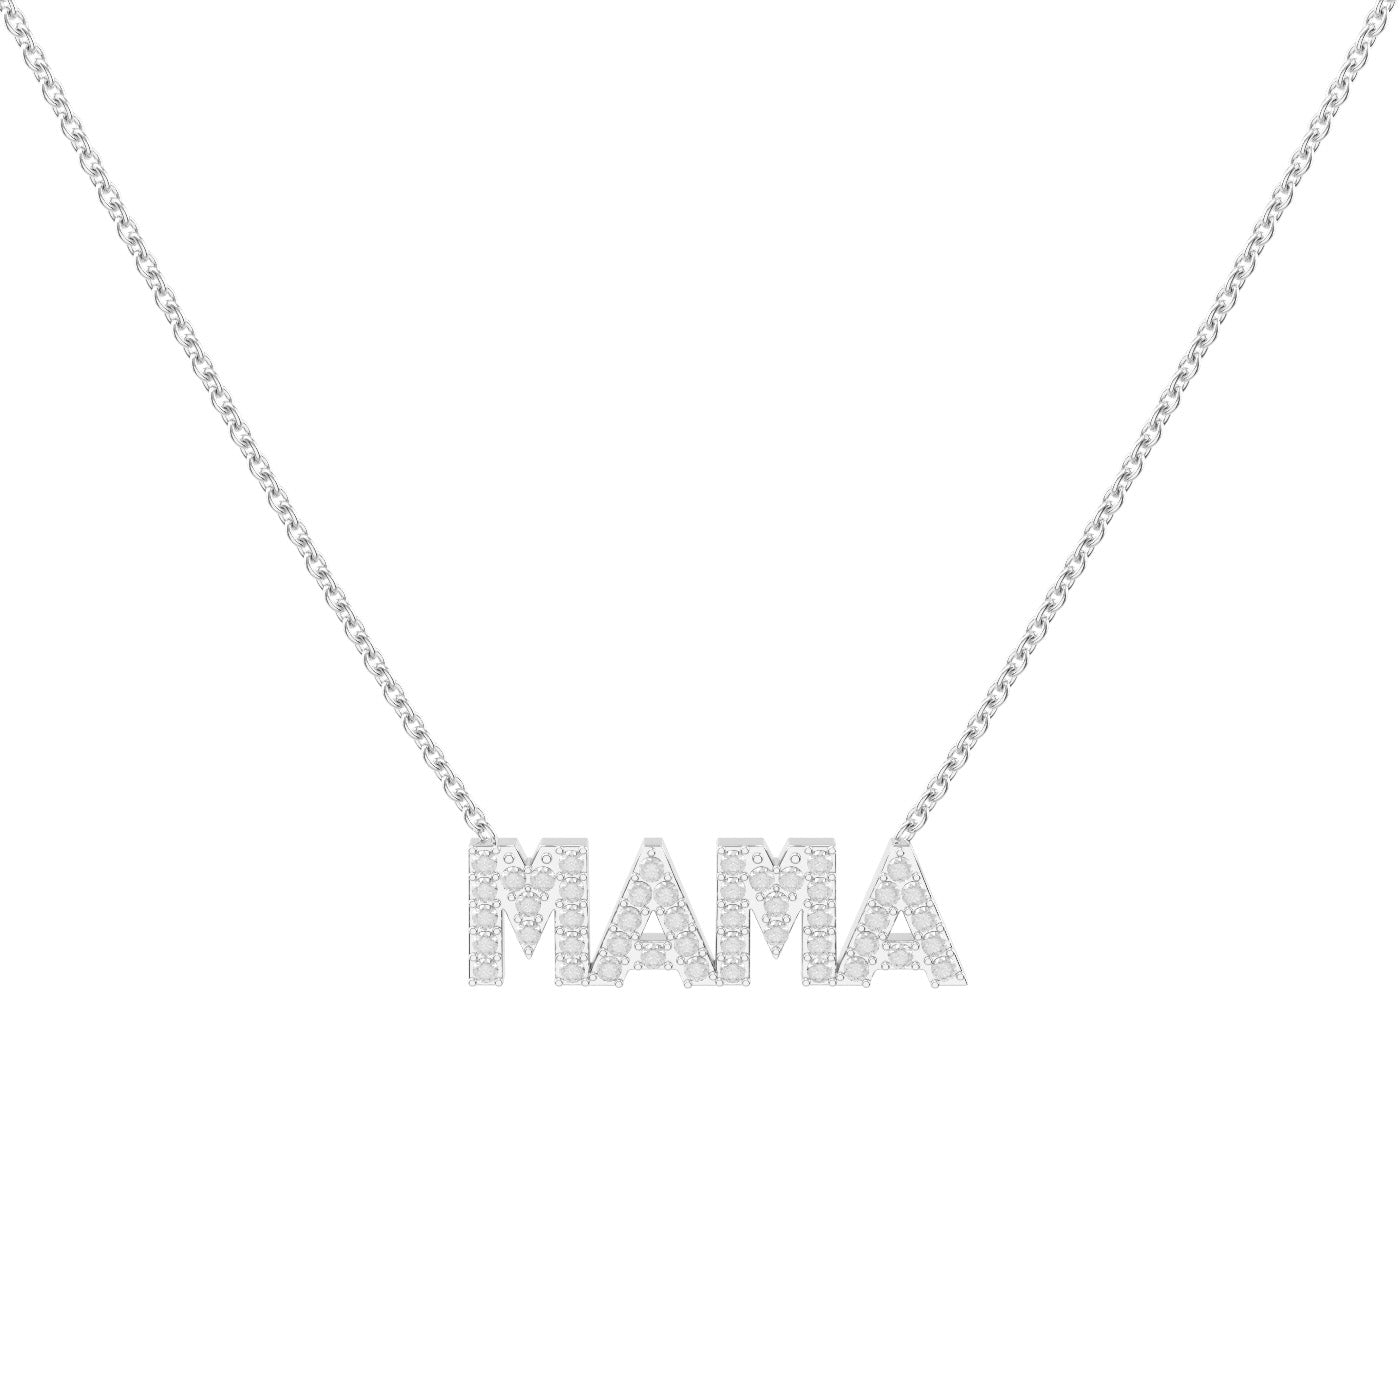 Mama Halskette mit Zirkonia (6658621014201)